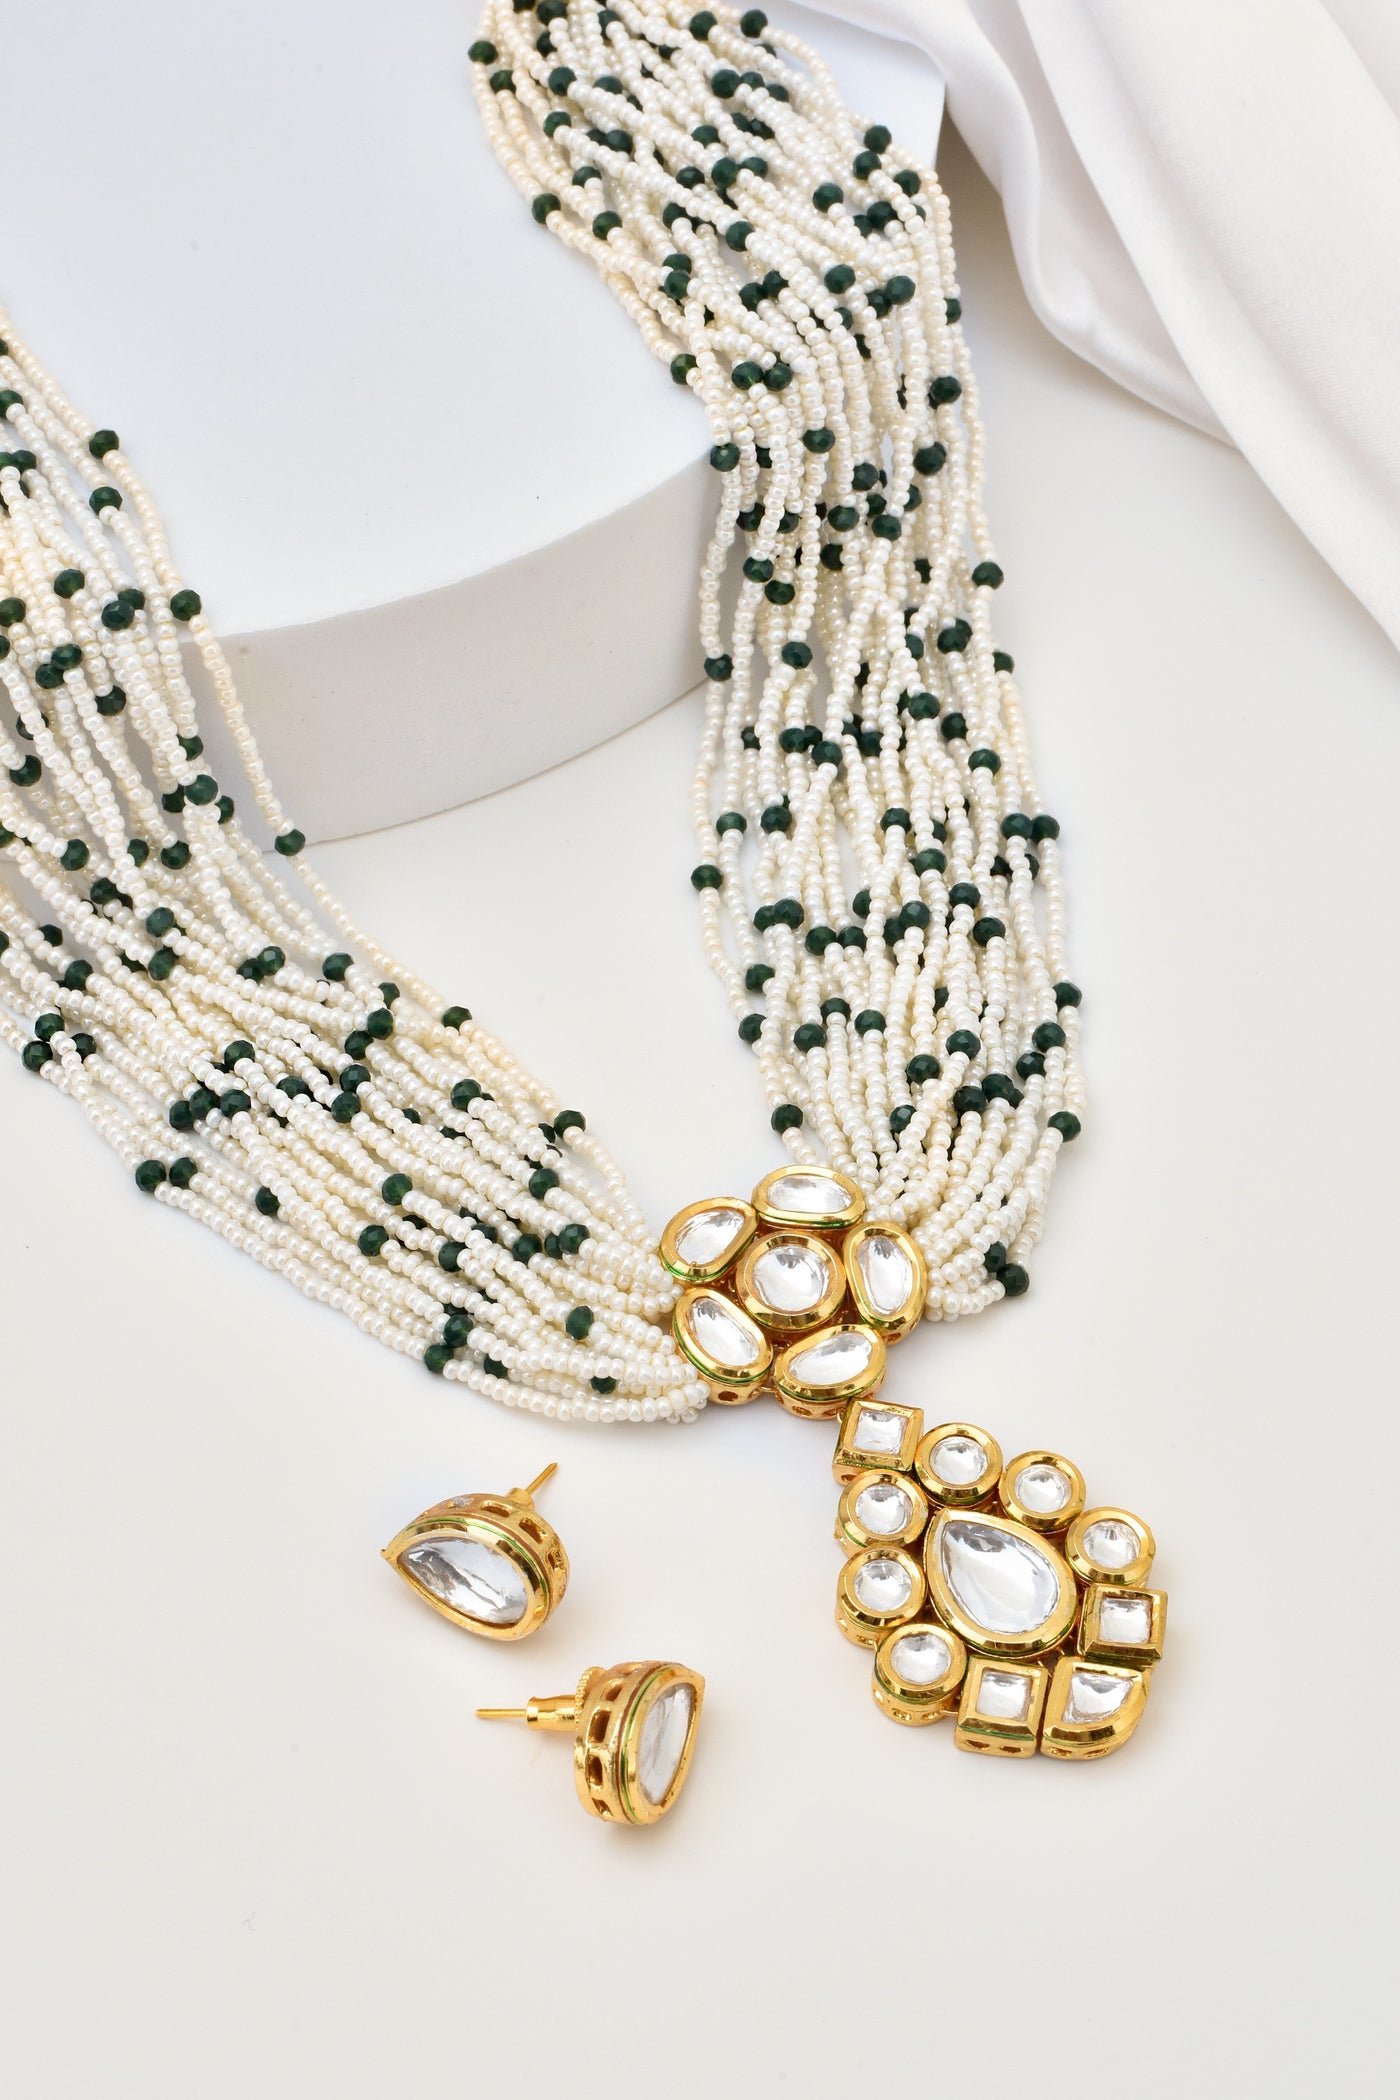 Vanya Green Long Kundan and Pearl Necklace Set